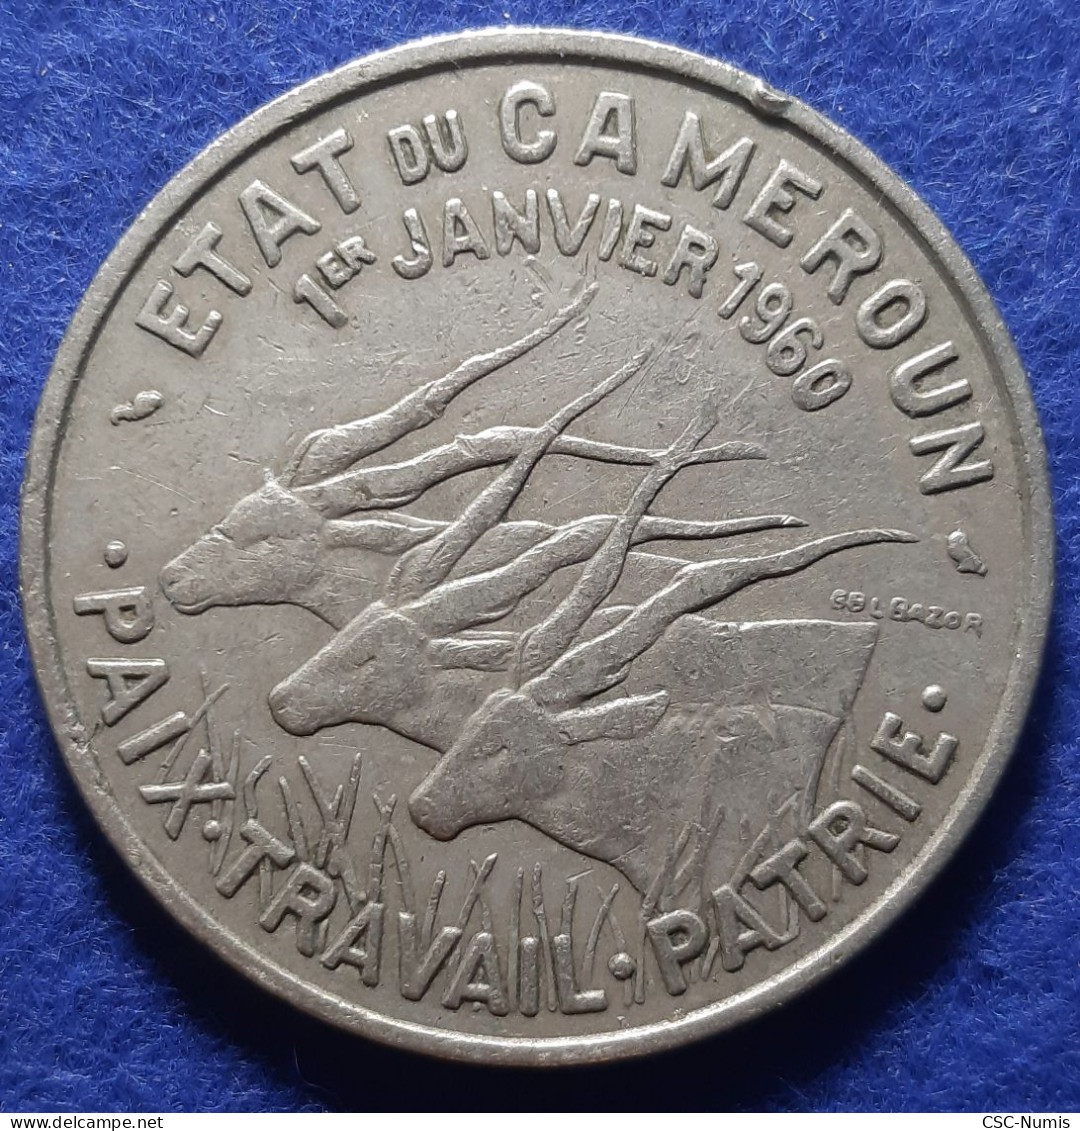 (CG#107) - Cameroun - 50 Francs 1960 - Cameroon